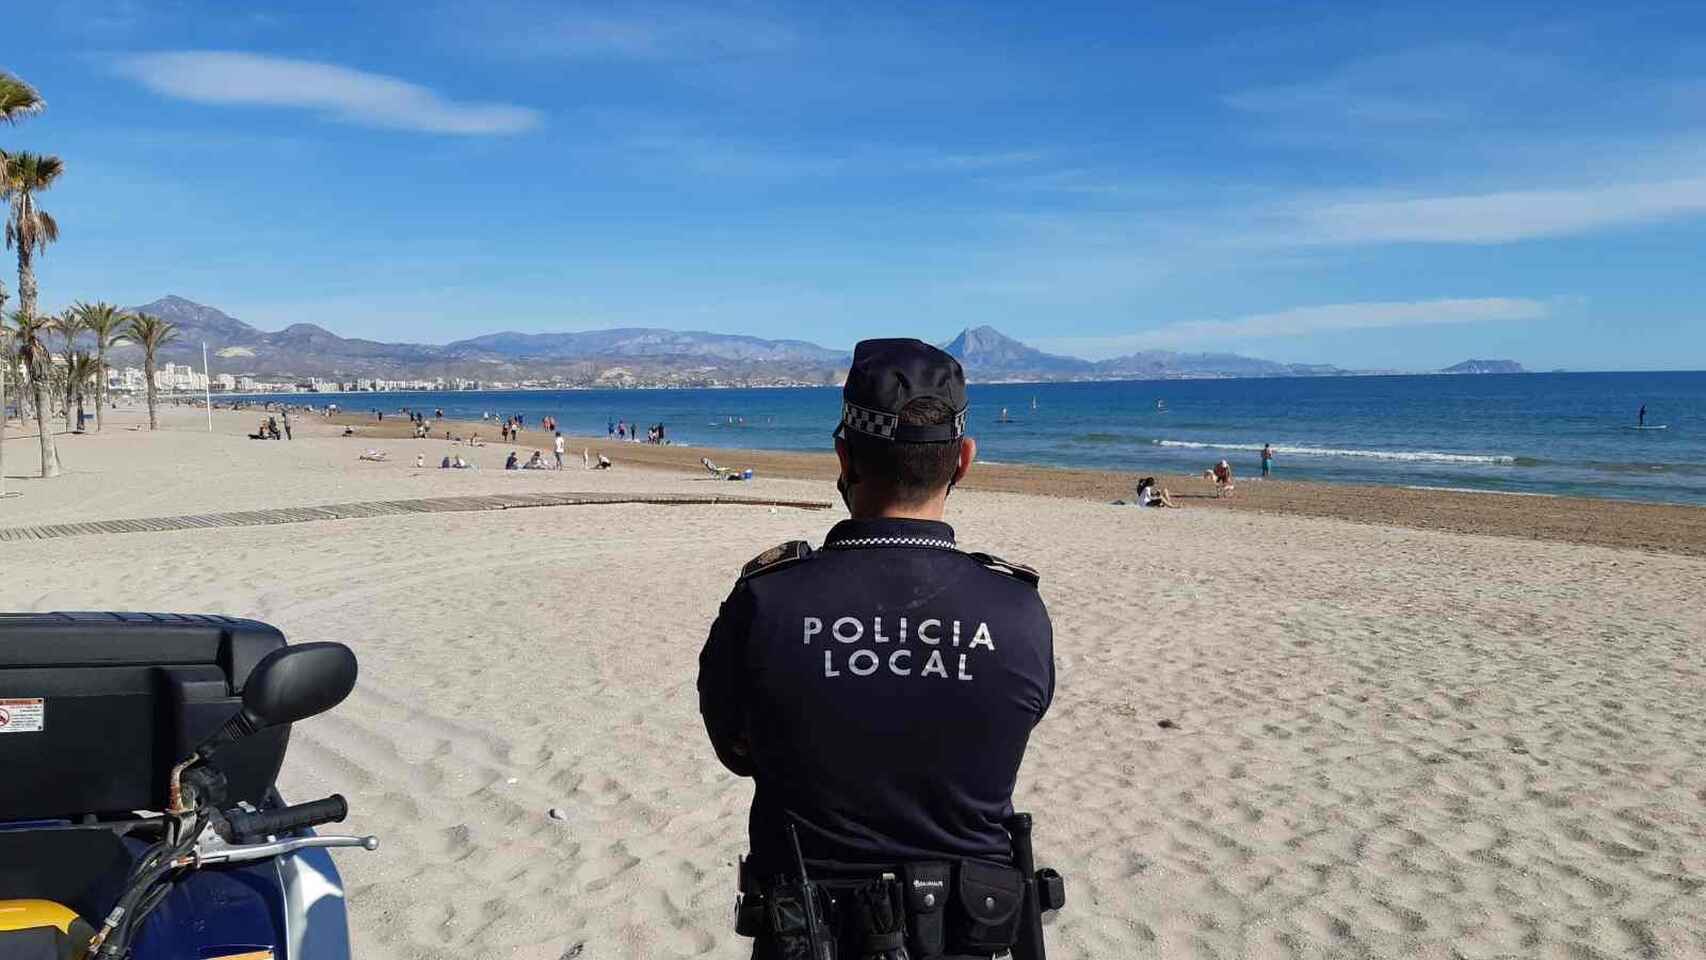 Policía local vigilando una playa de Alicante, en imagen de archivo.